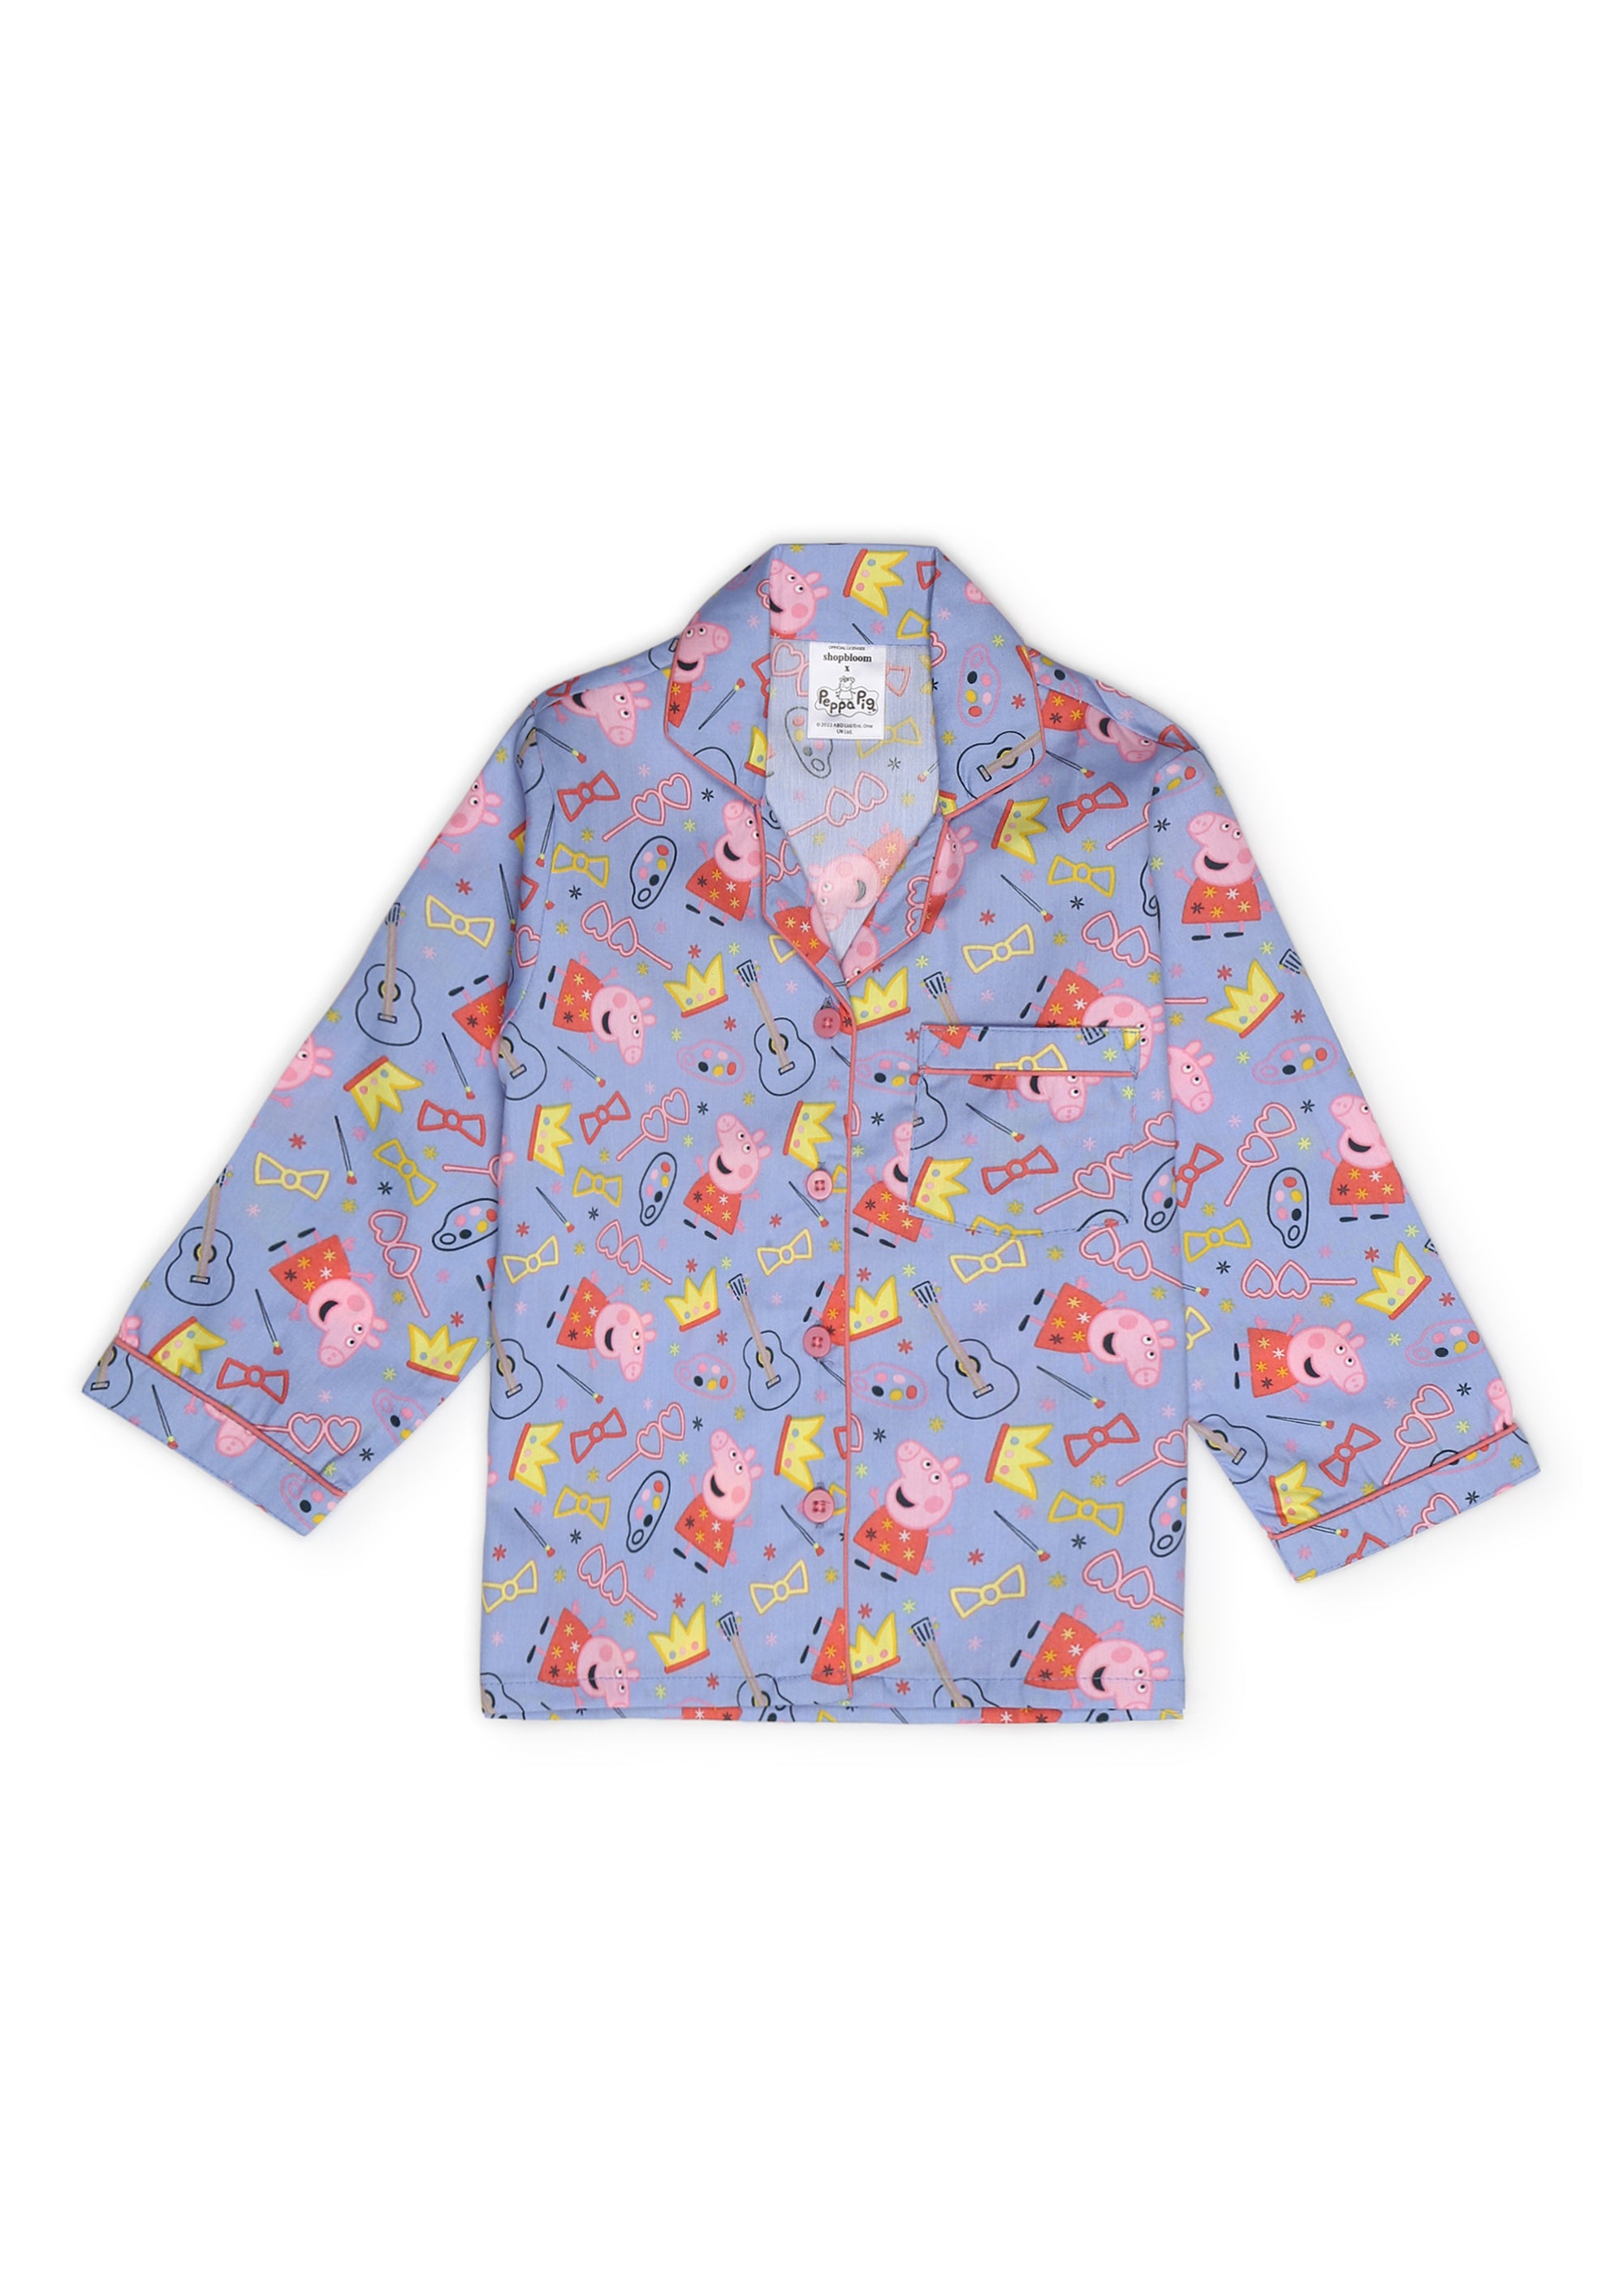 Peppa Crown Print Long Sleeve Kids Night Suit - Shopbloom